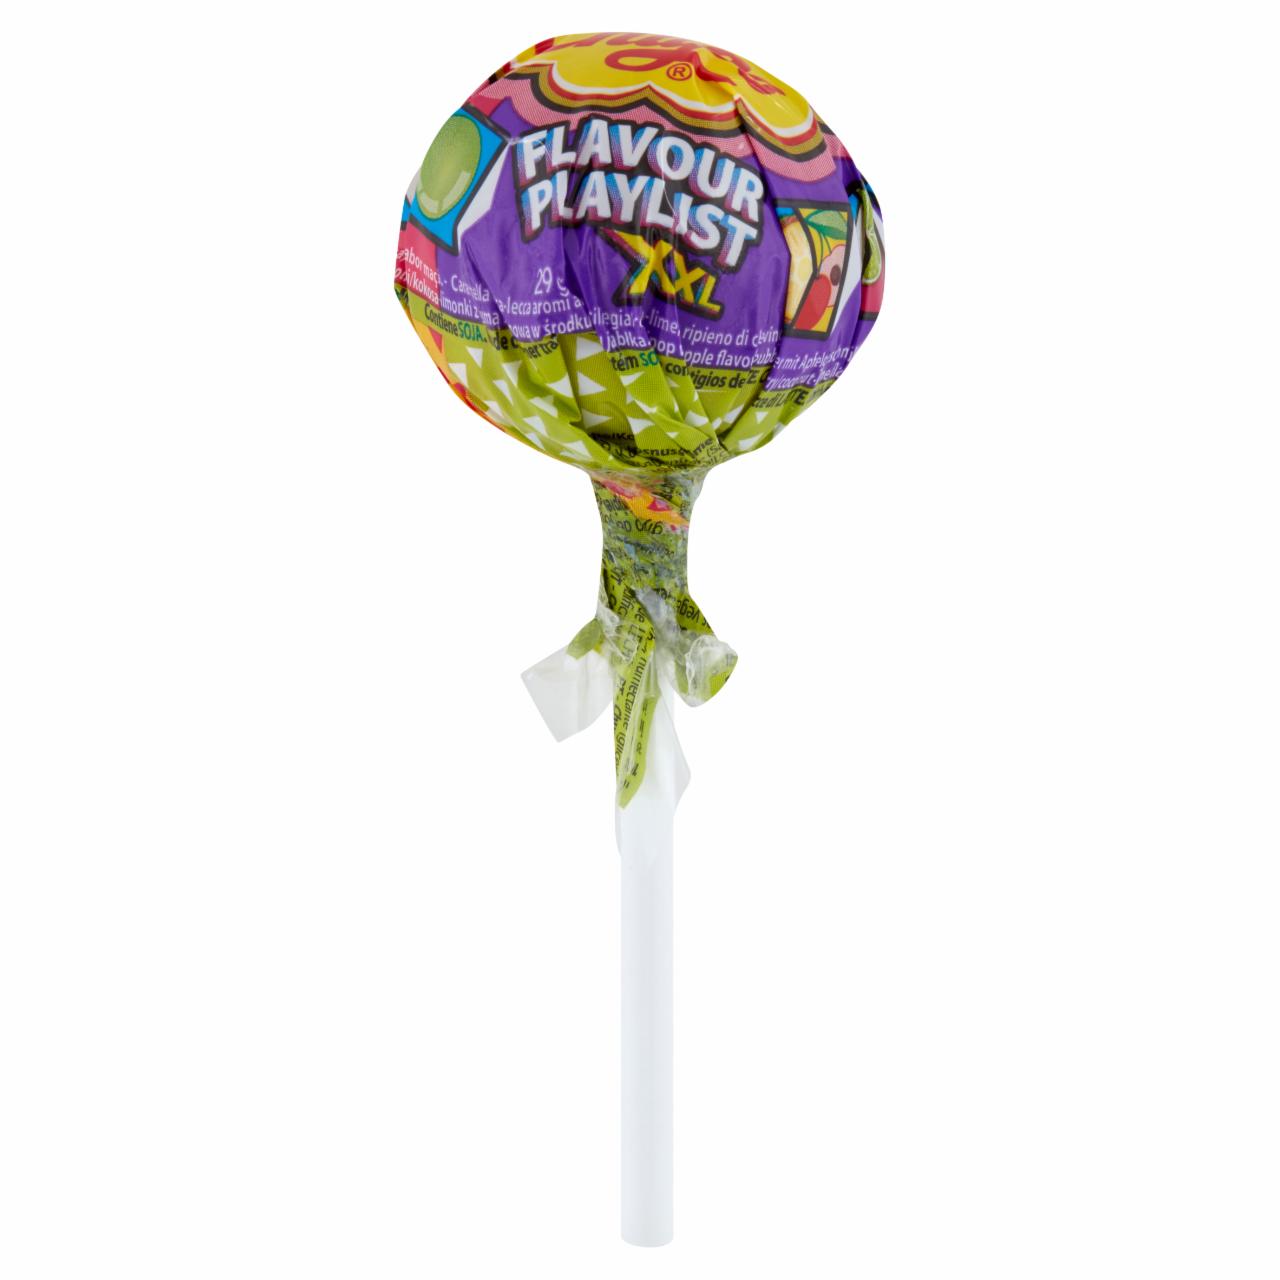 Zdjęcia - Flavour Playlist XXL Lizak wielosmakowe z gumą balonową 29 g Chupa Chups